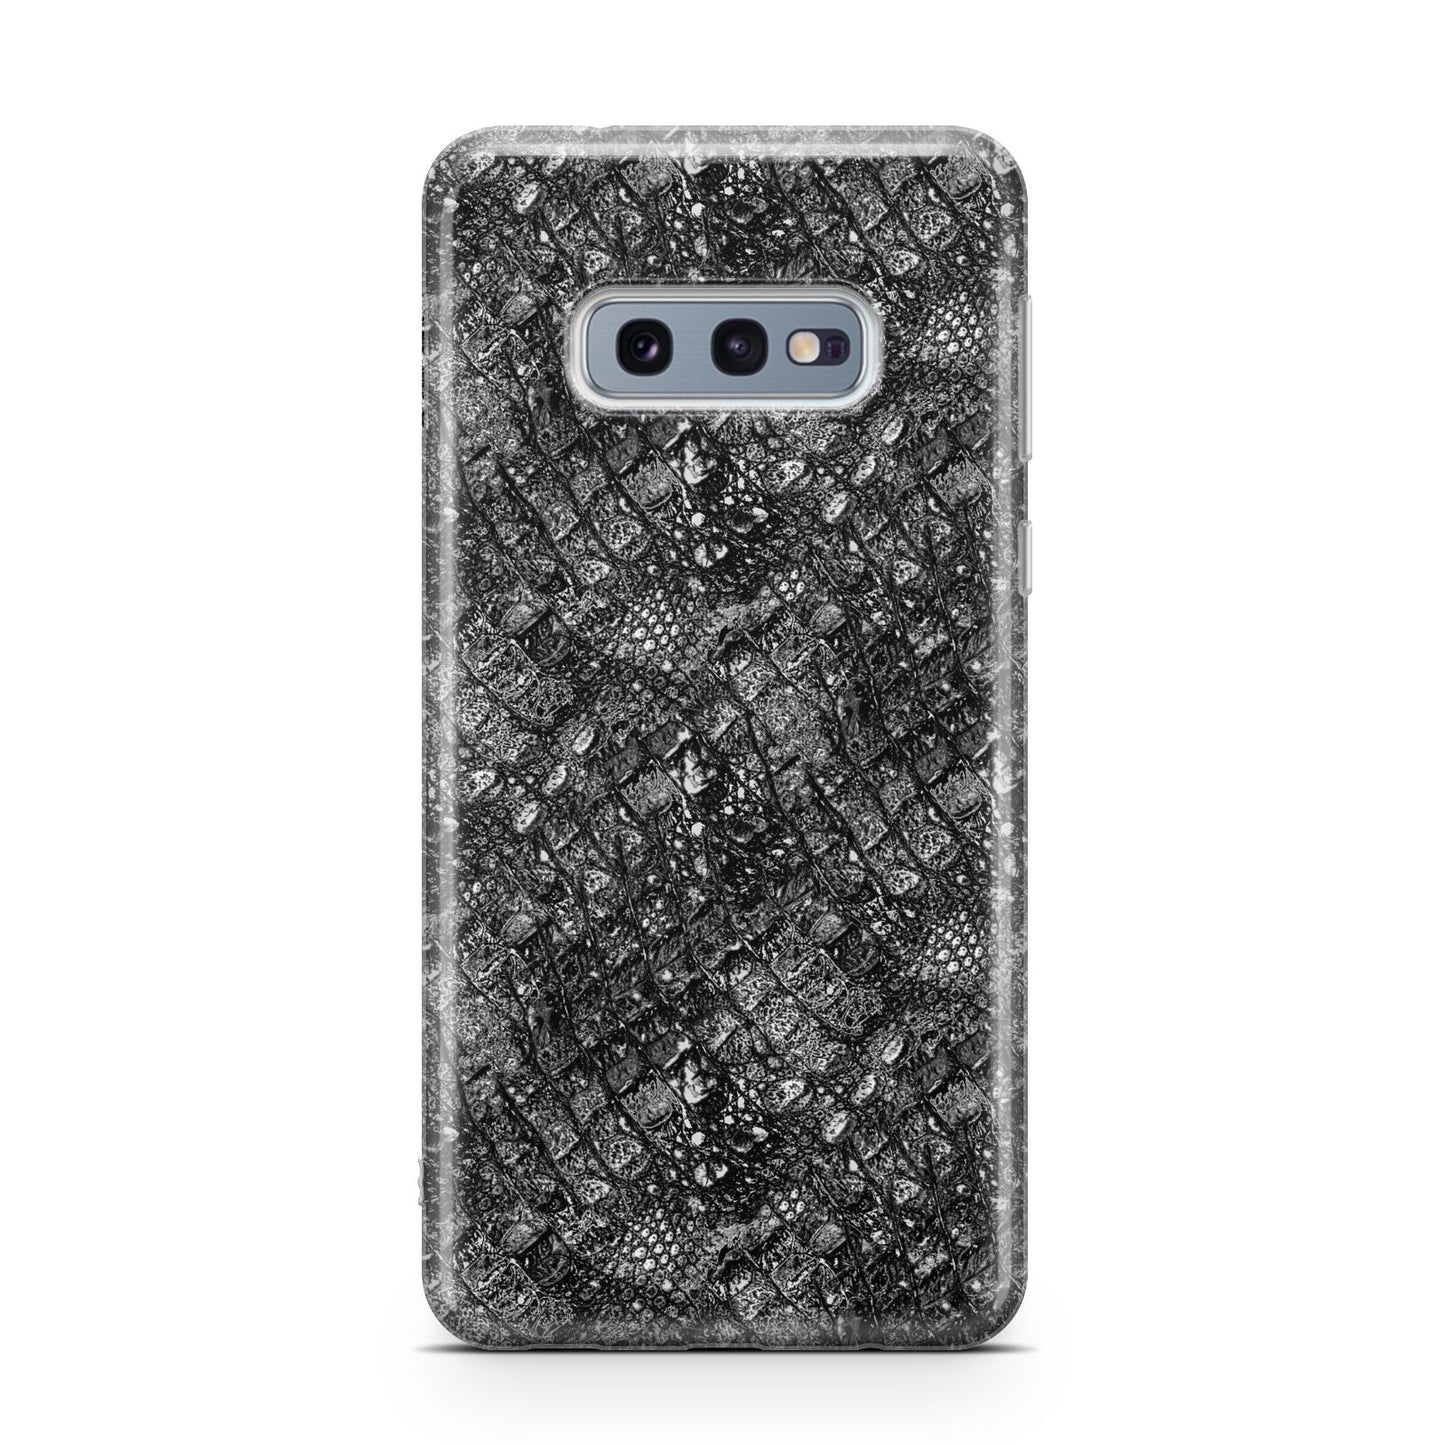 Snakeskin Design Samsung Galaxy S10E Case